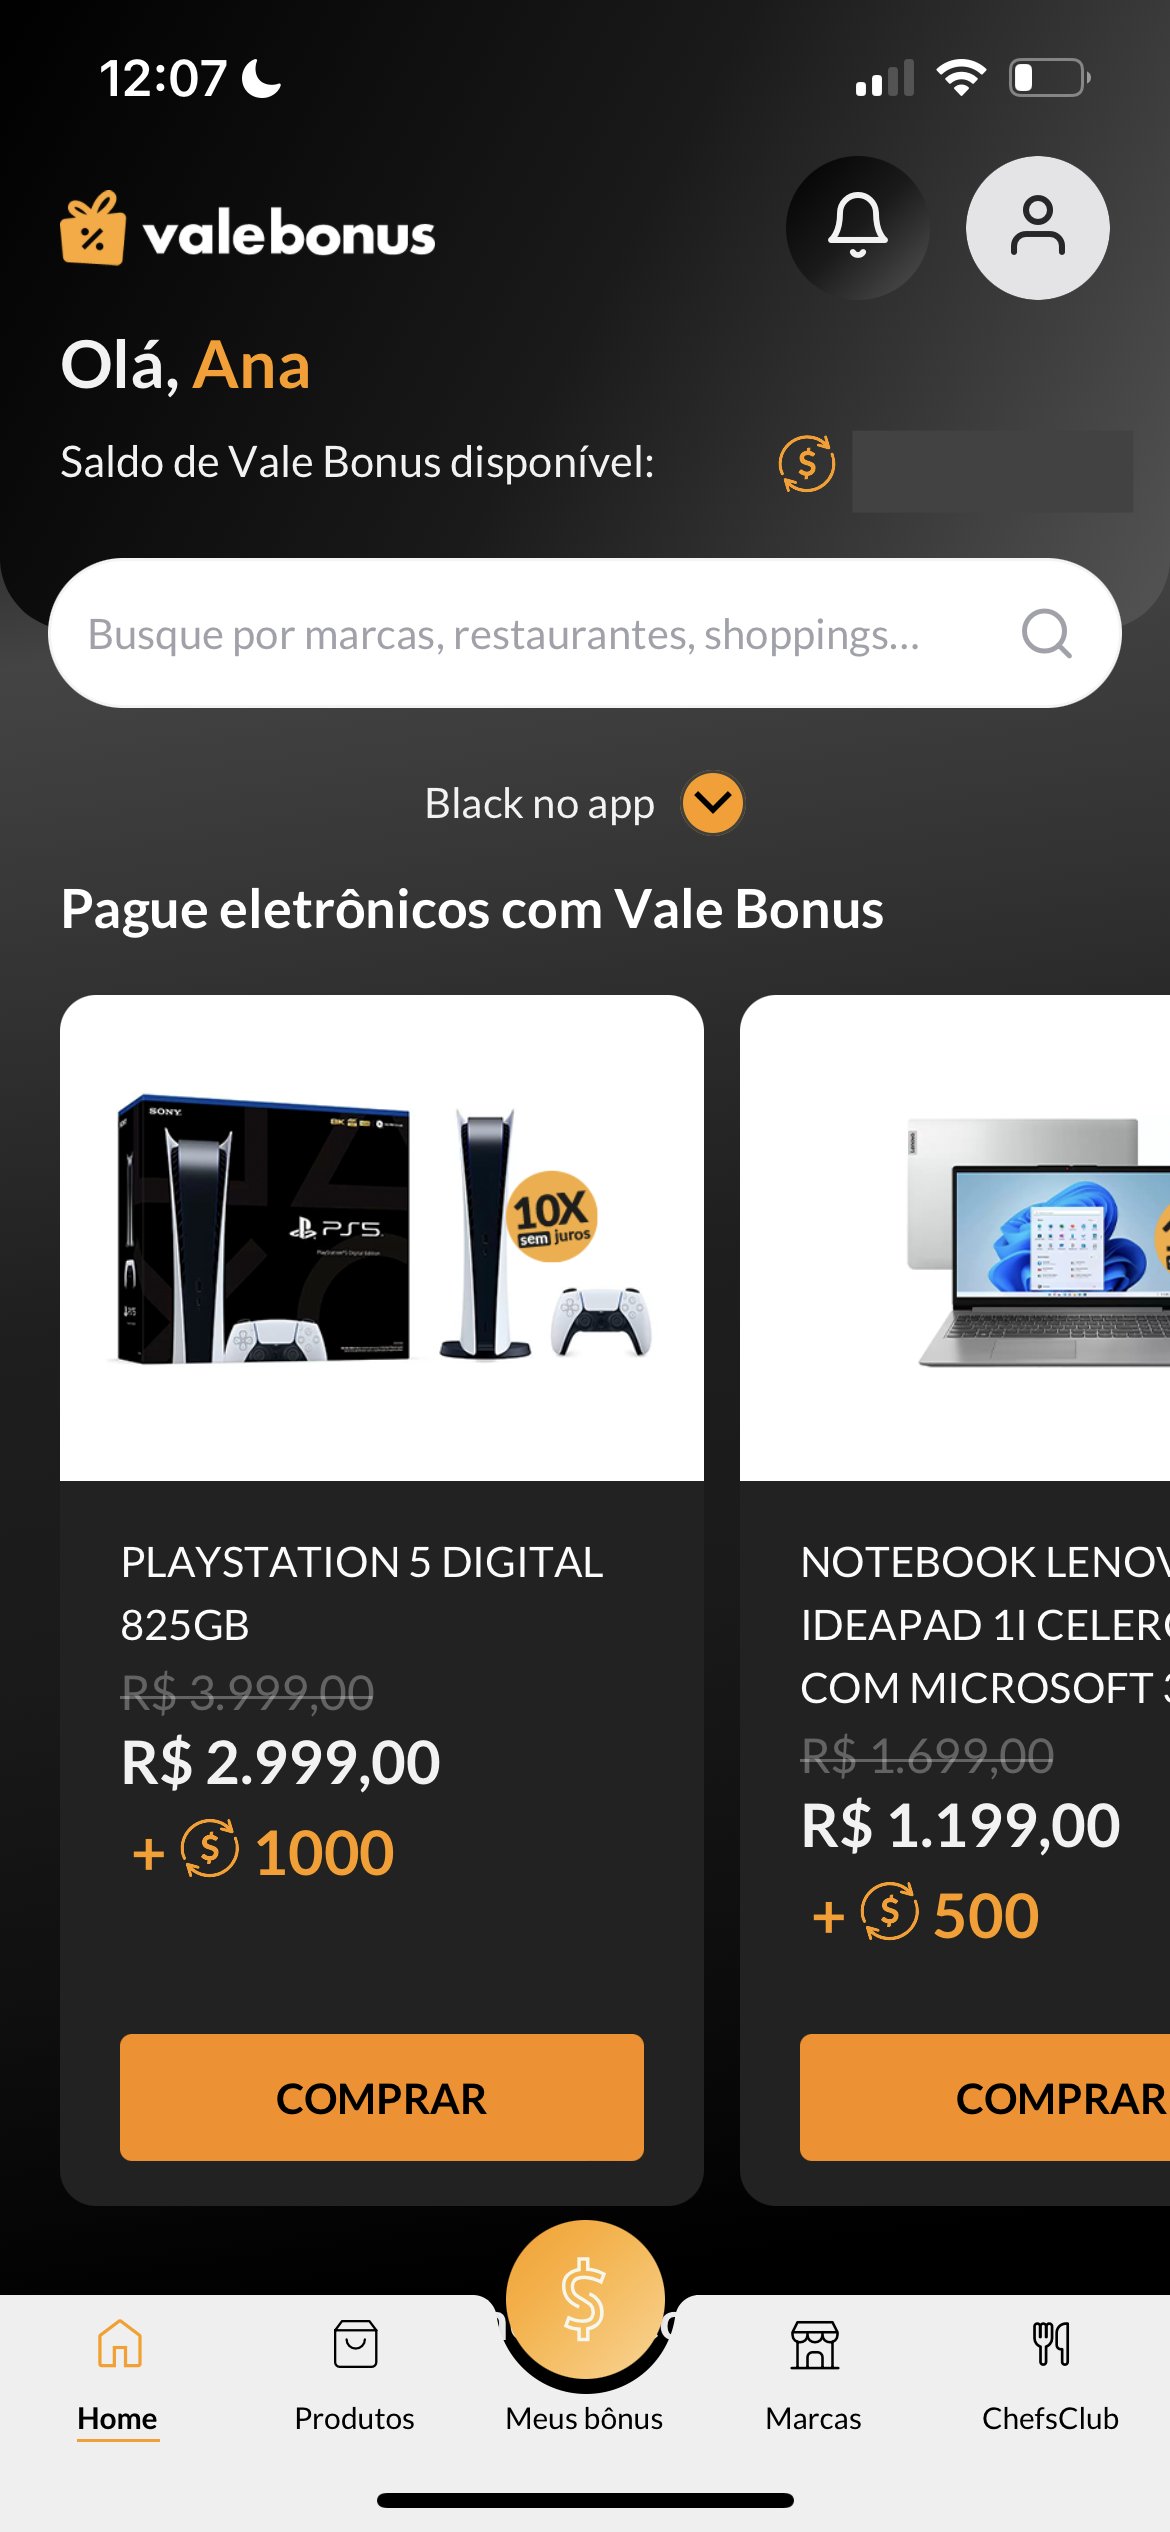 PS5 está em promoção com até R$ 600 de desconto; confira!